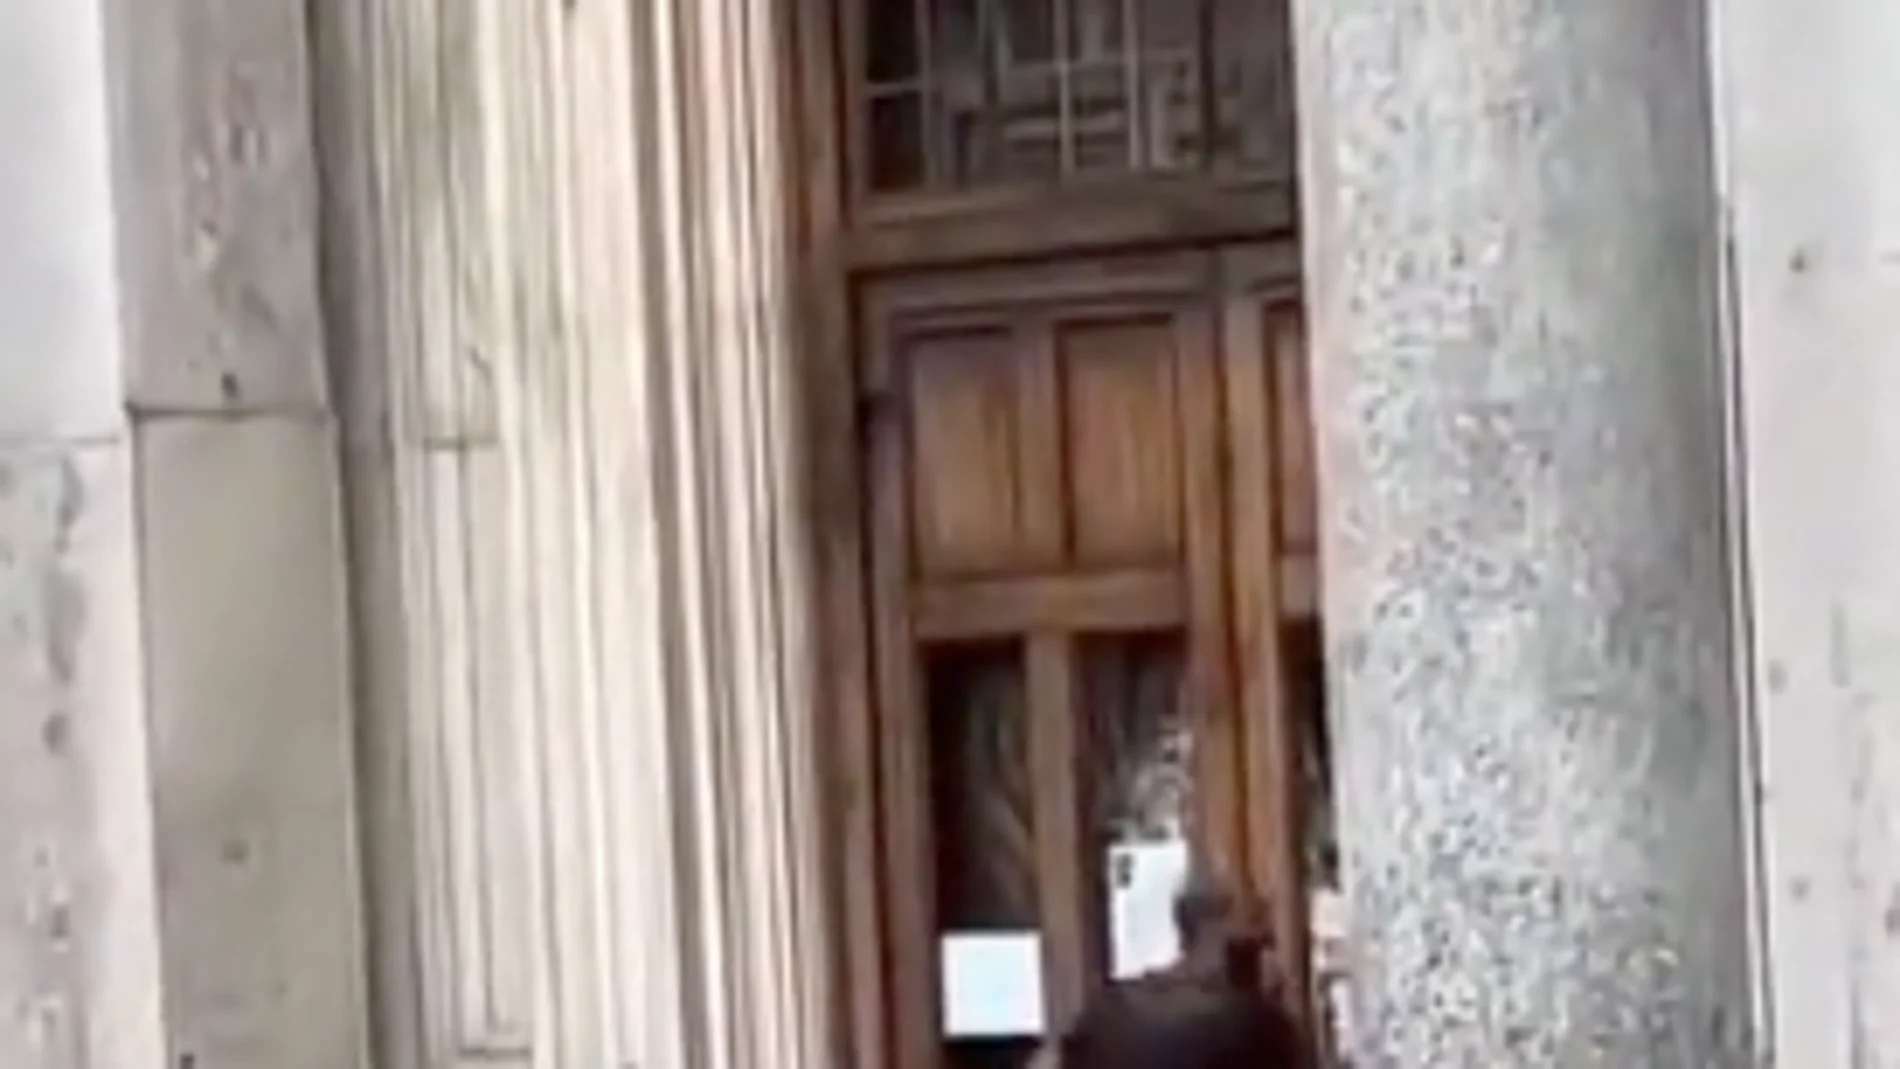 Un hombre lanza piedras contra una iglesia en Italia al grito de "¡Cristianos ladrones!"